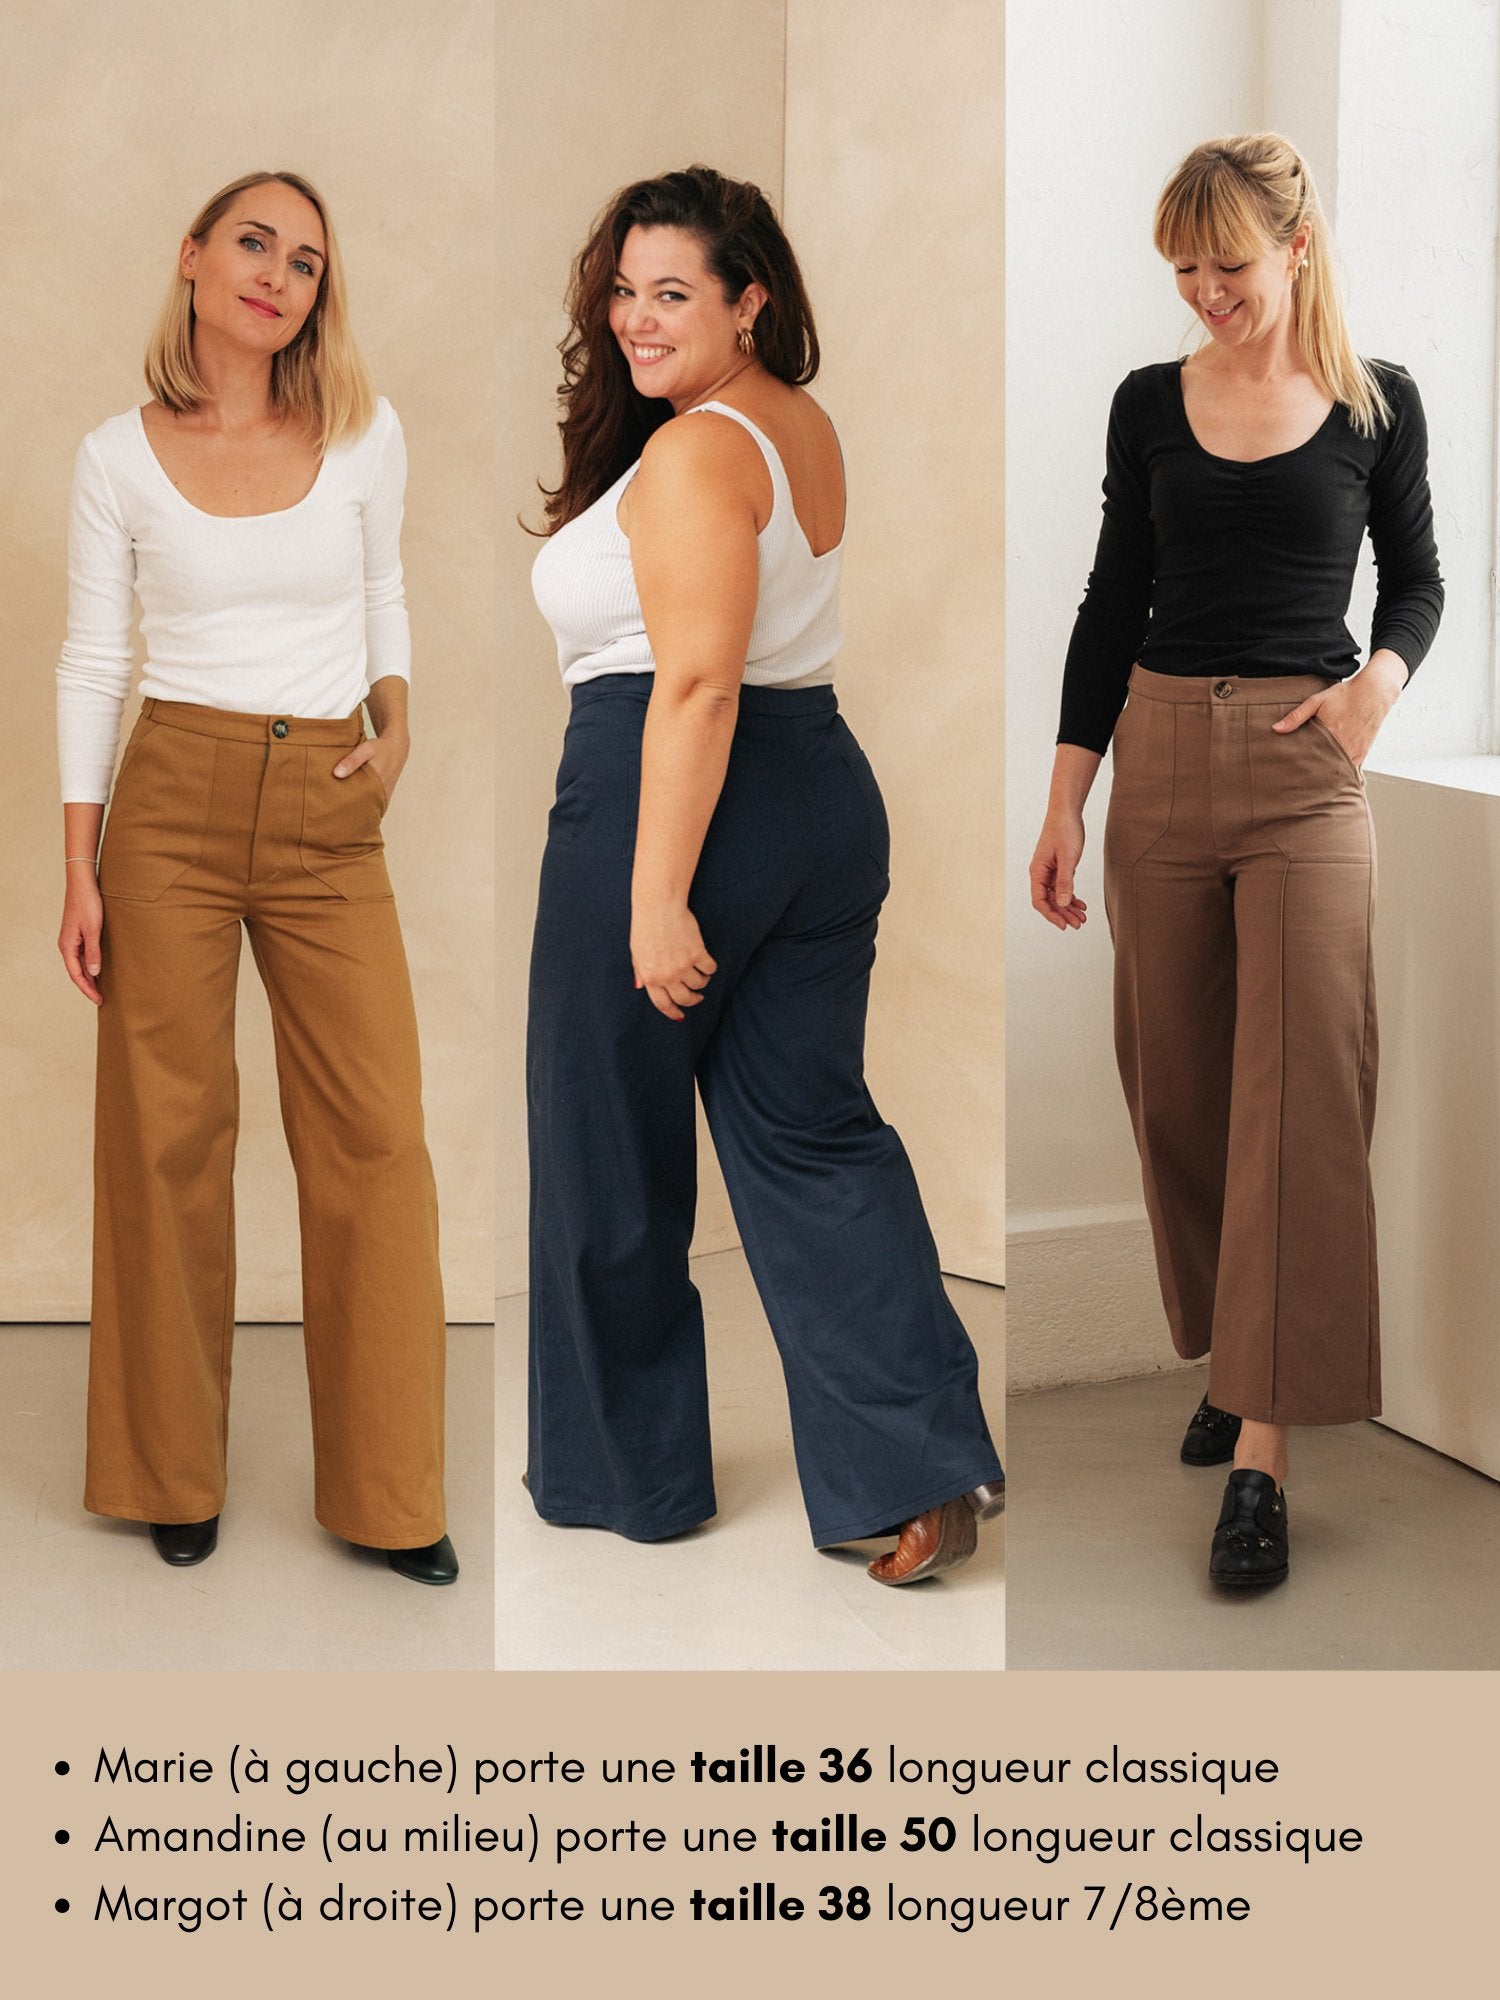 Joli Kit Couture - Pantalon Suzanne - Joli Lab